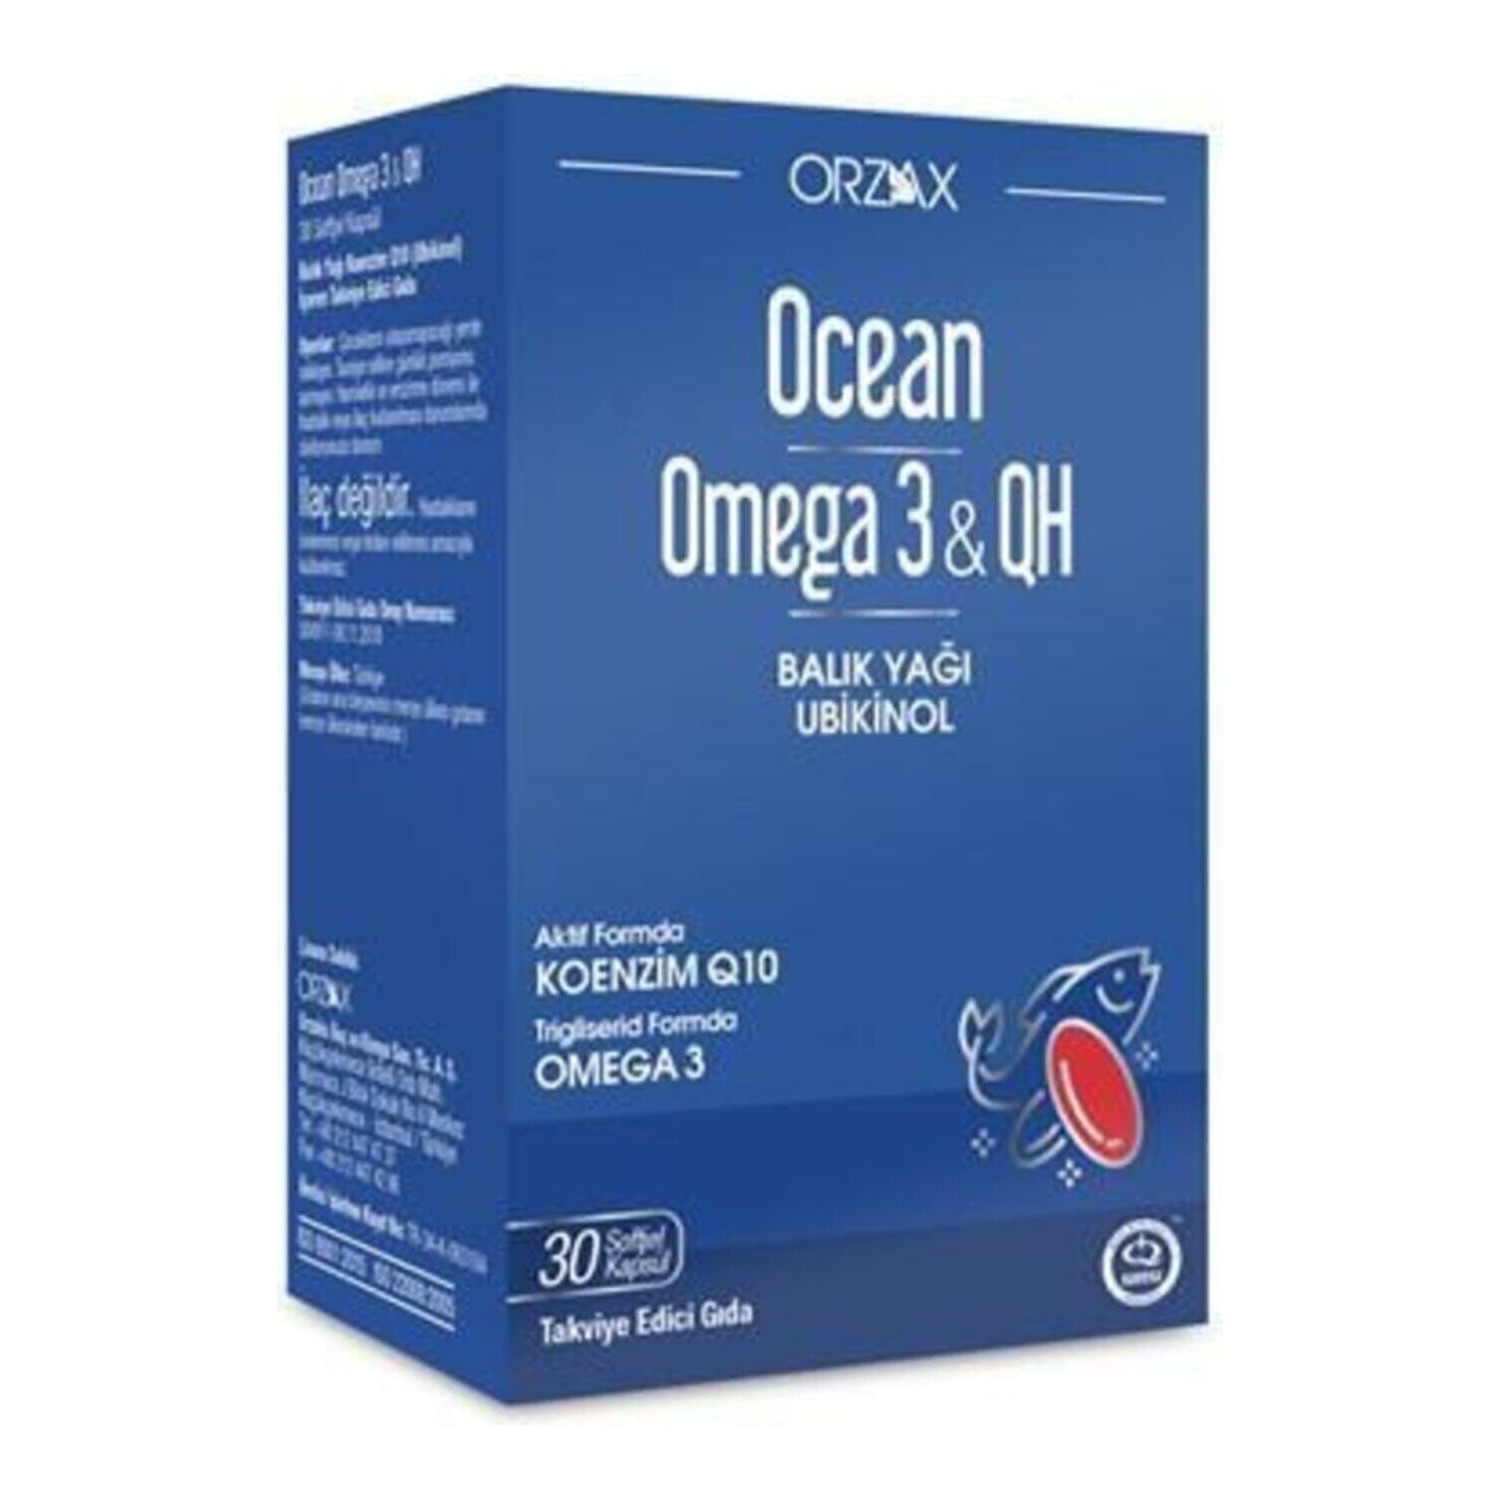 Пищевая добавка Ocean Omega 3 & Qh, 30 мягких капсул имунол orzax 40 капсул гель orzax для умывания лица 100 мл